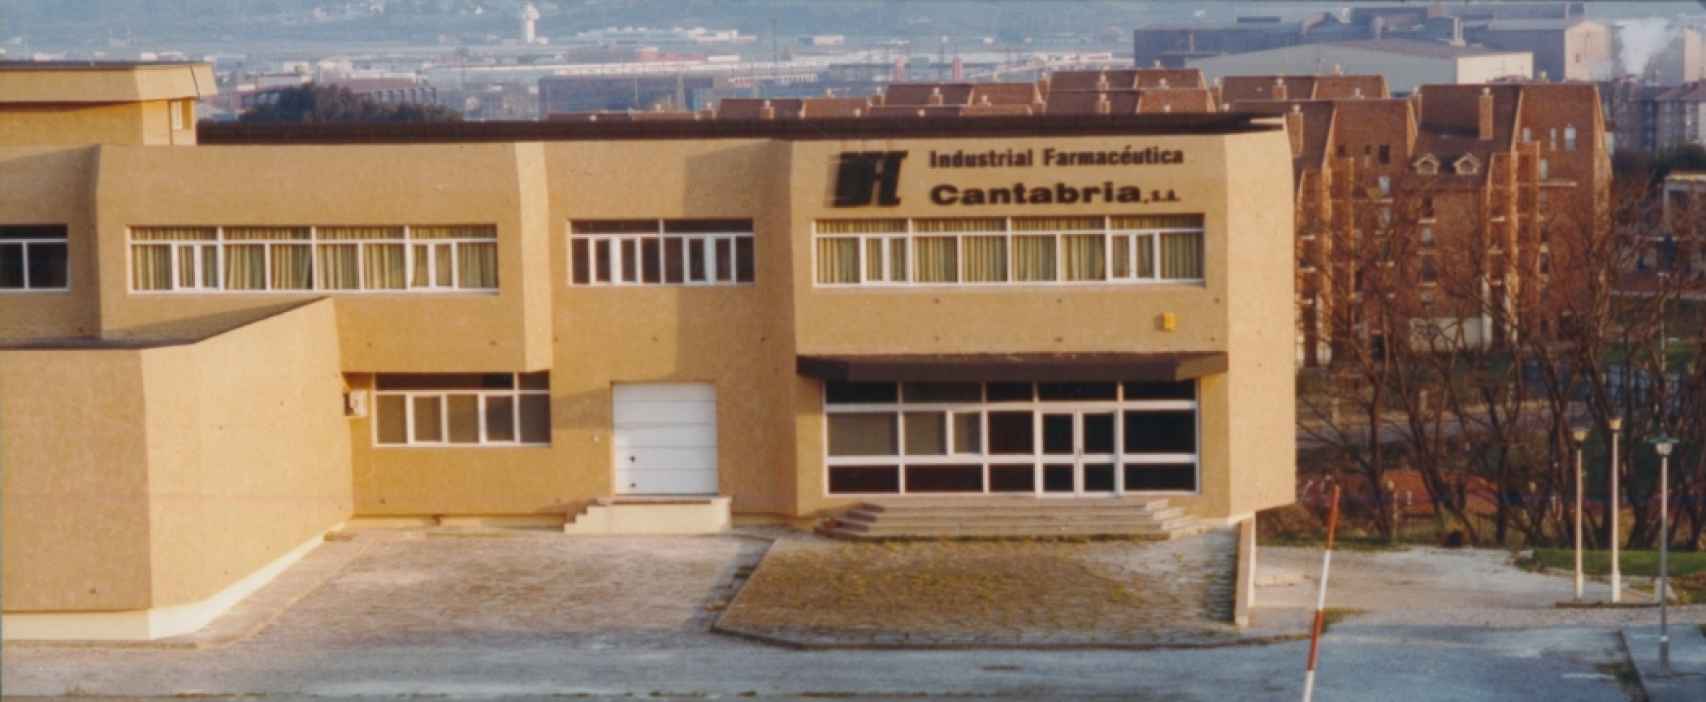 La fábrica de Cantabria en 1989.